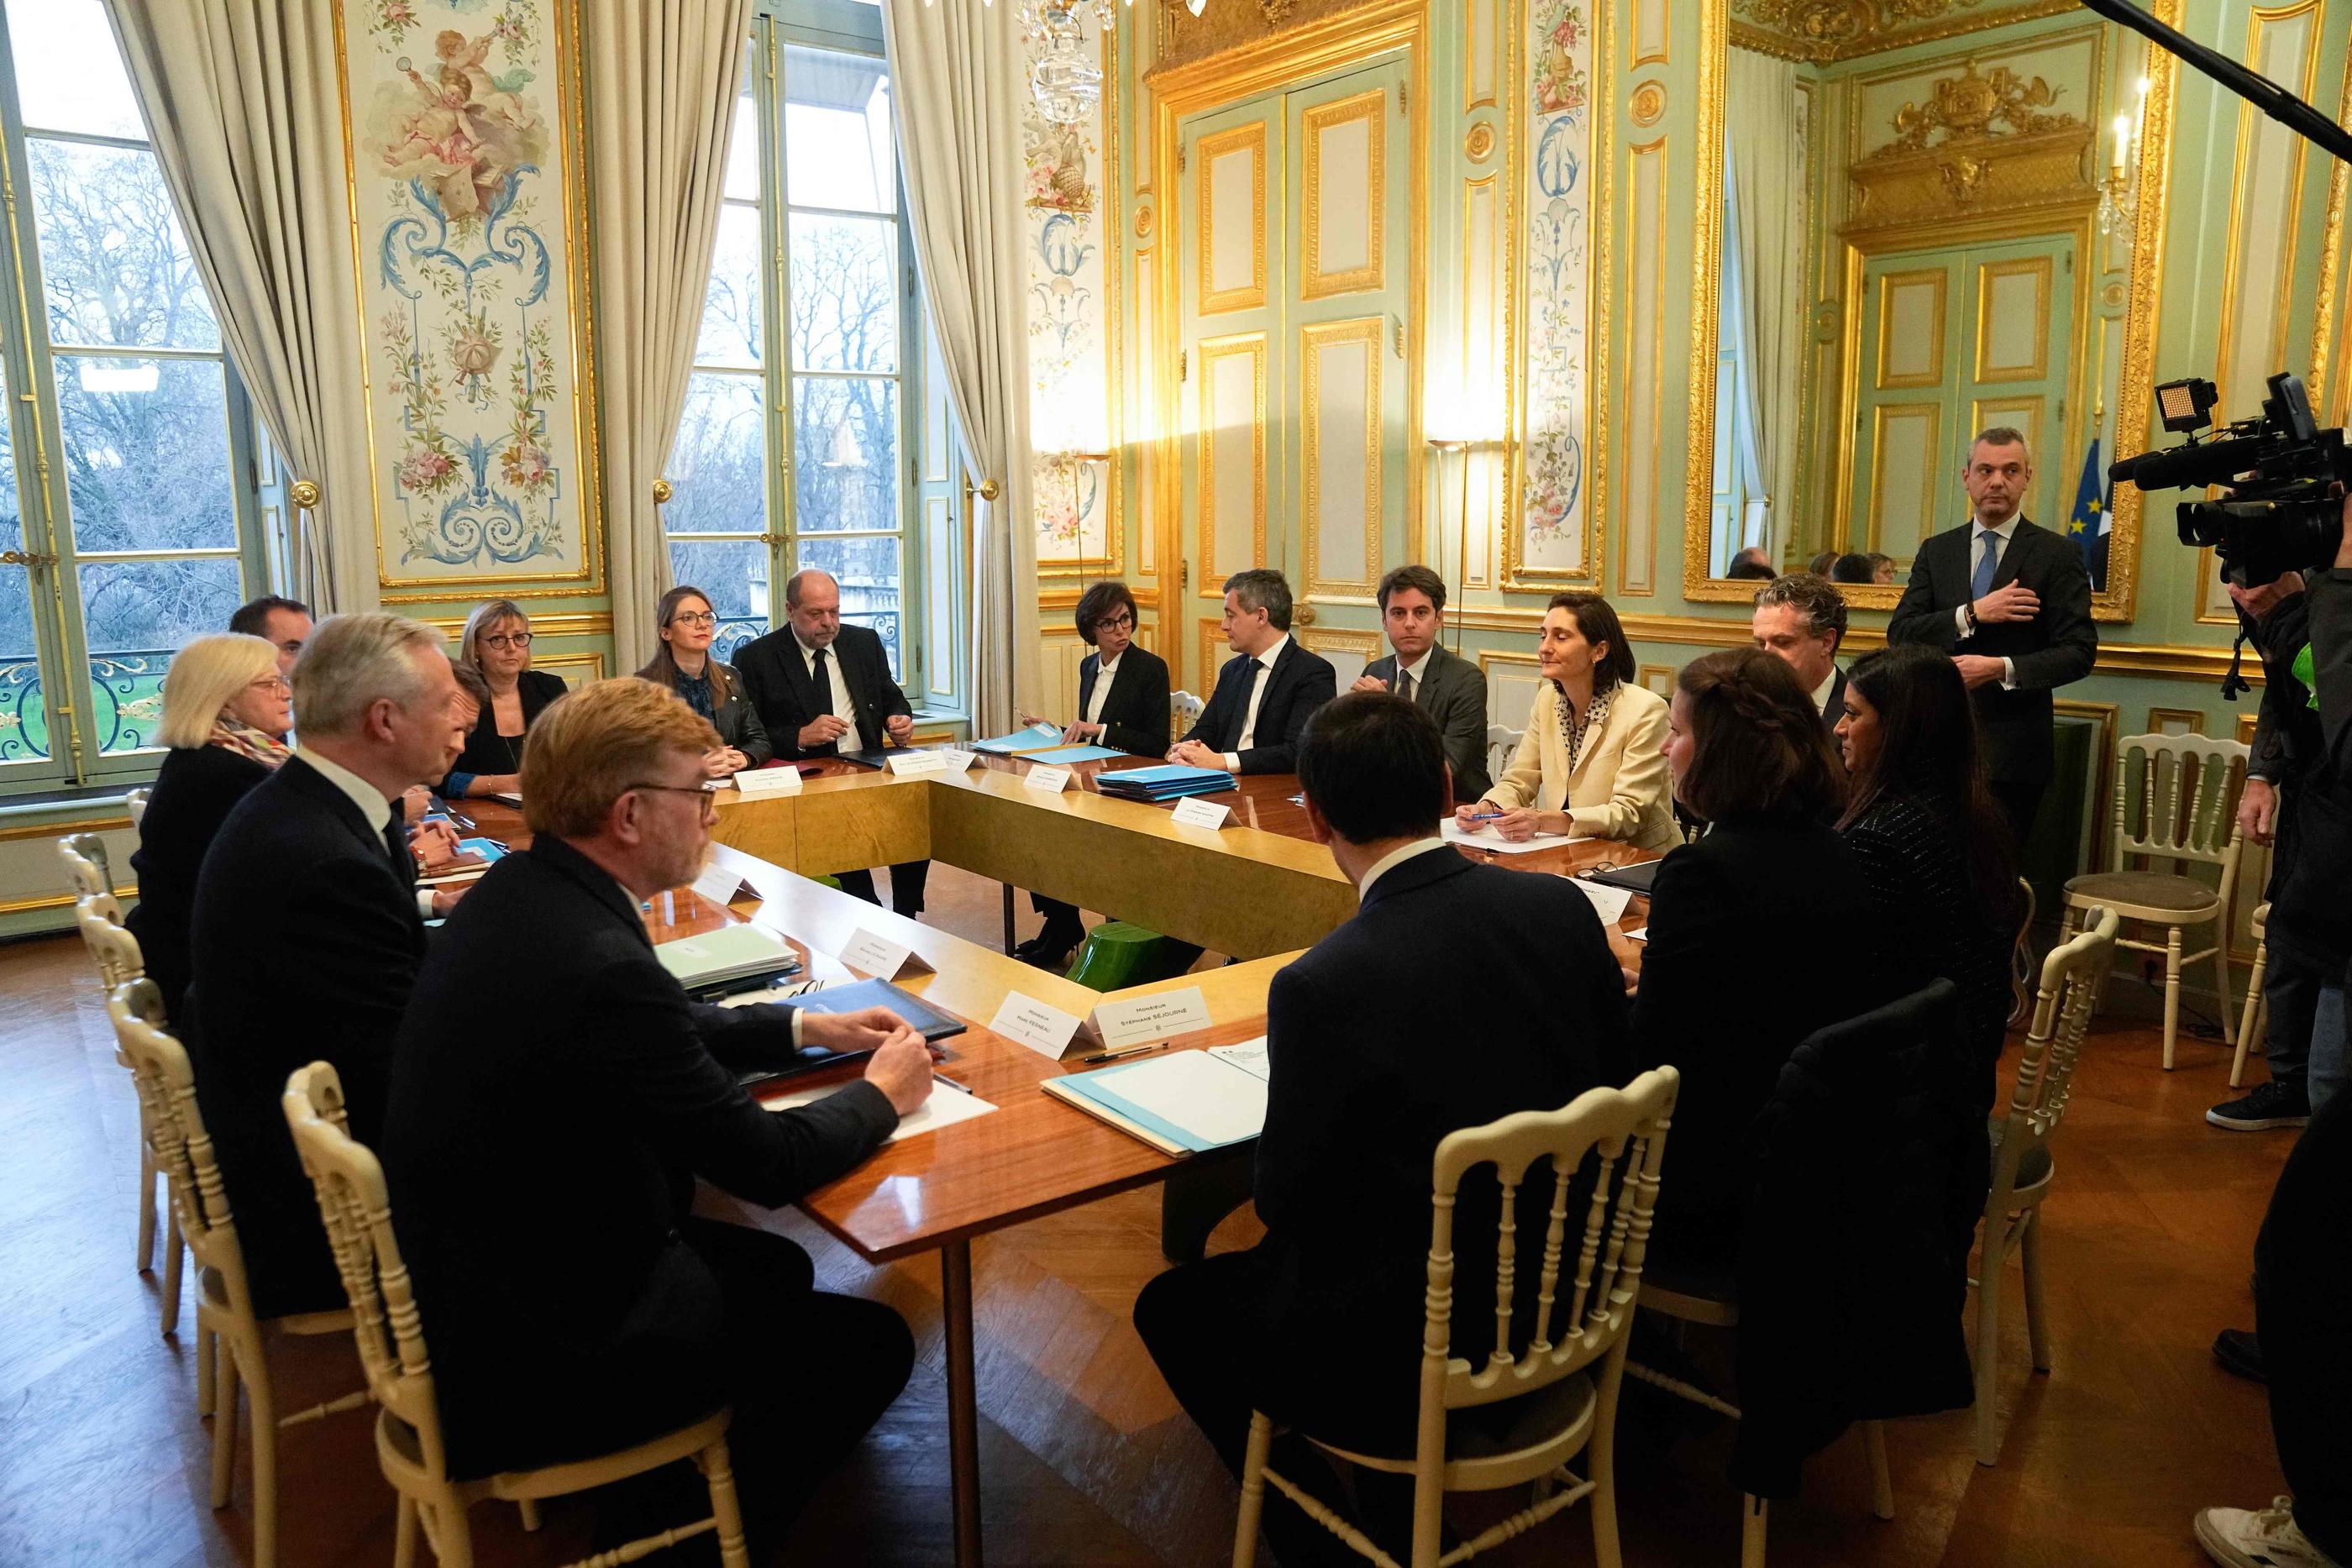 Le premier Conseil des ministres du gouvernement Attal s'est exceptionnellement tenu vendredi dans le salon vert de l’Élysée, comme pour insister sur l’idée d’un gouvernement resserré autour du couple exécutif. AFP/pool/Michel Euler